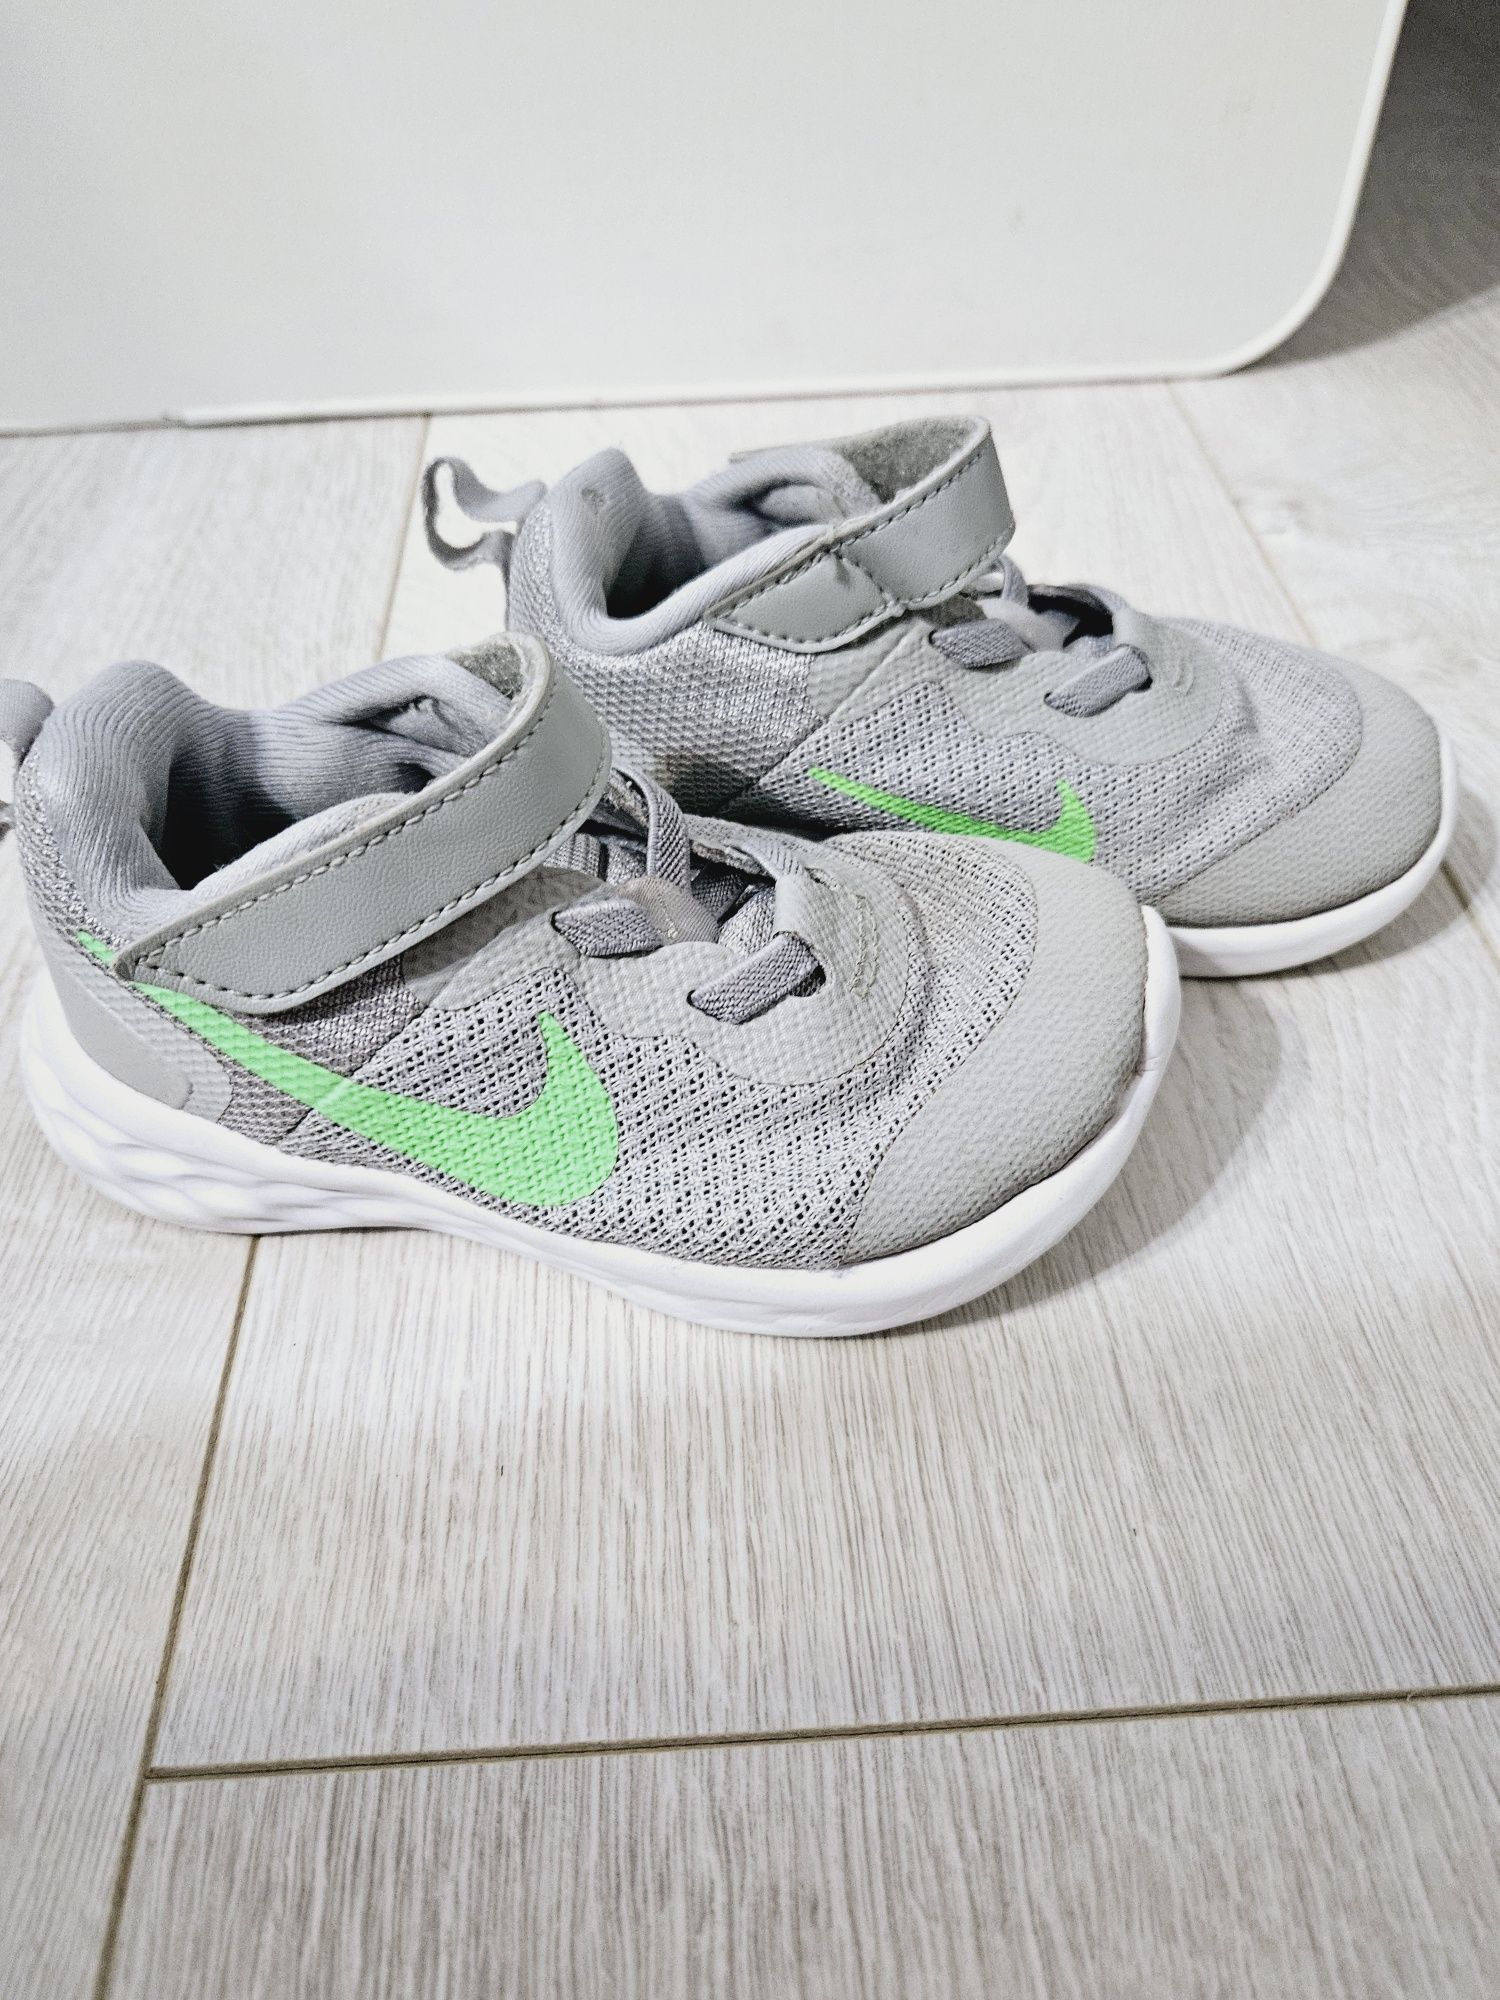 Adidasi Nike de vara 23.5 marime